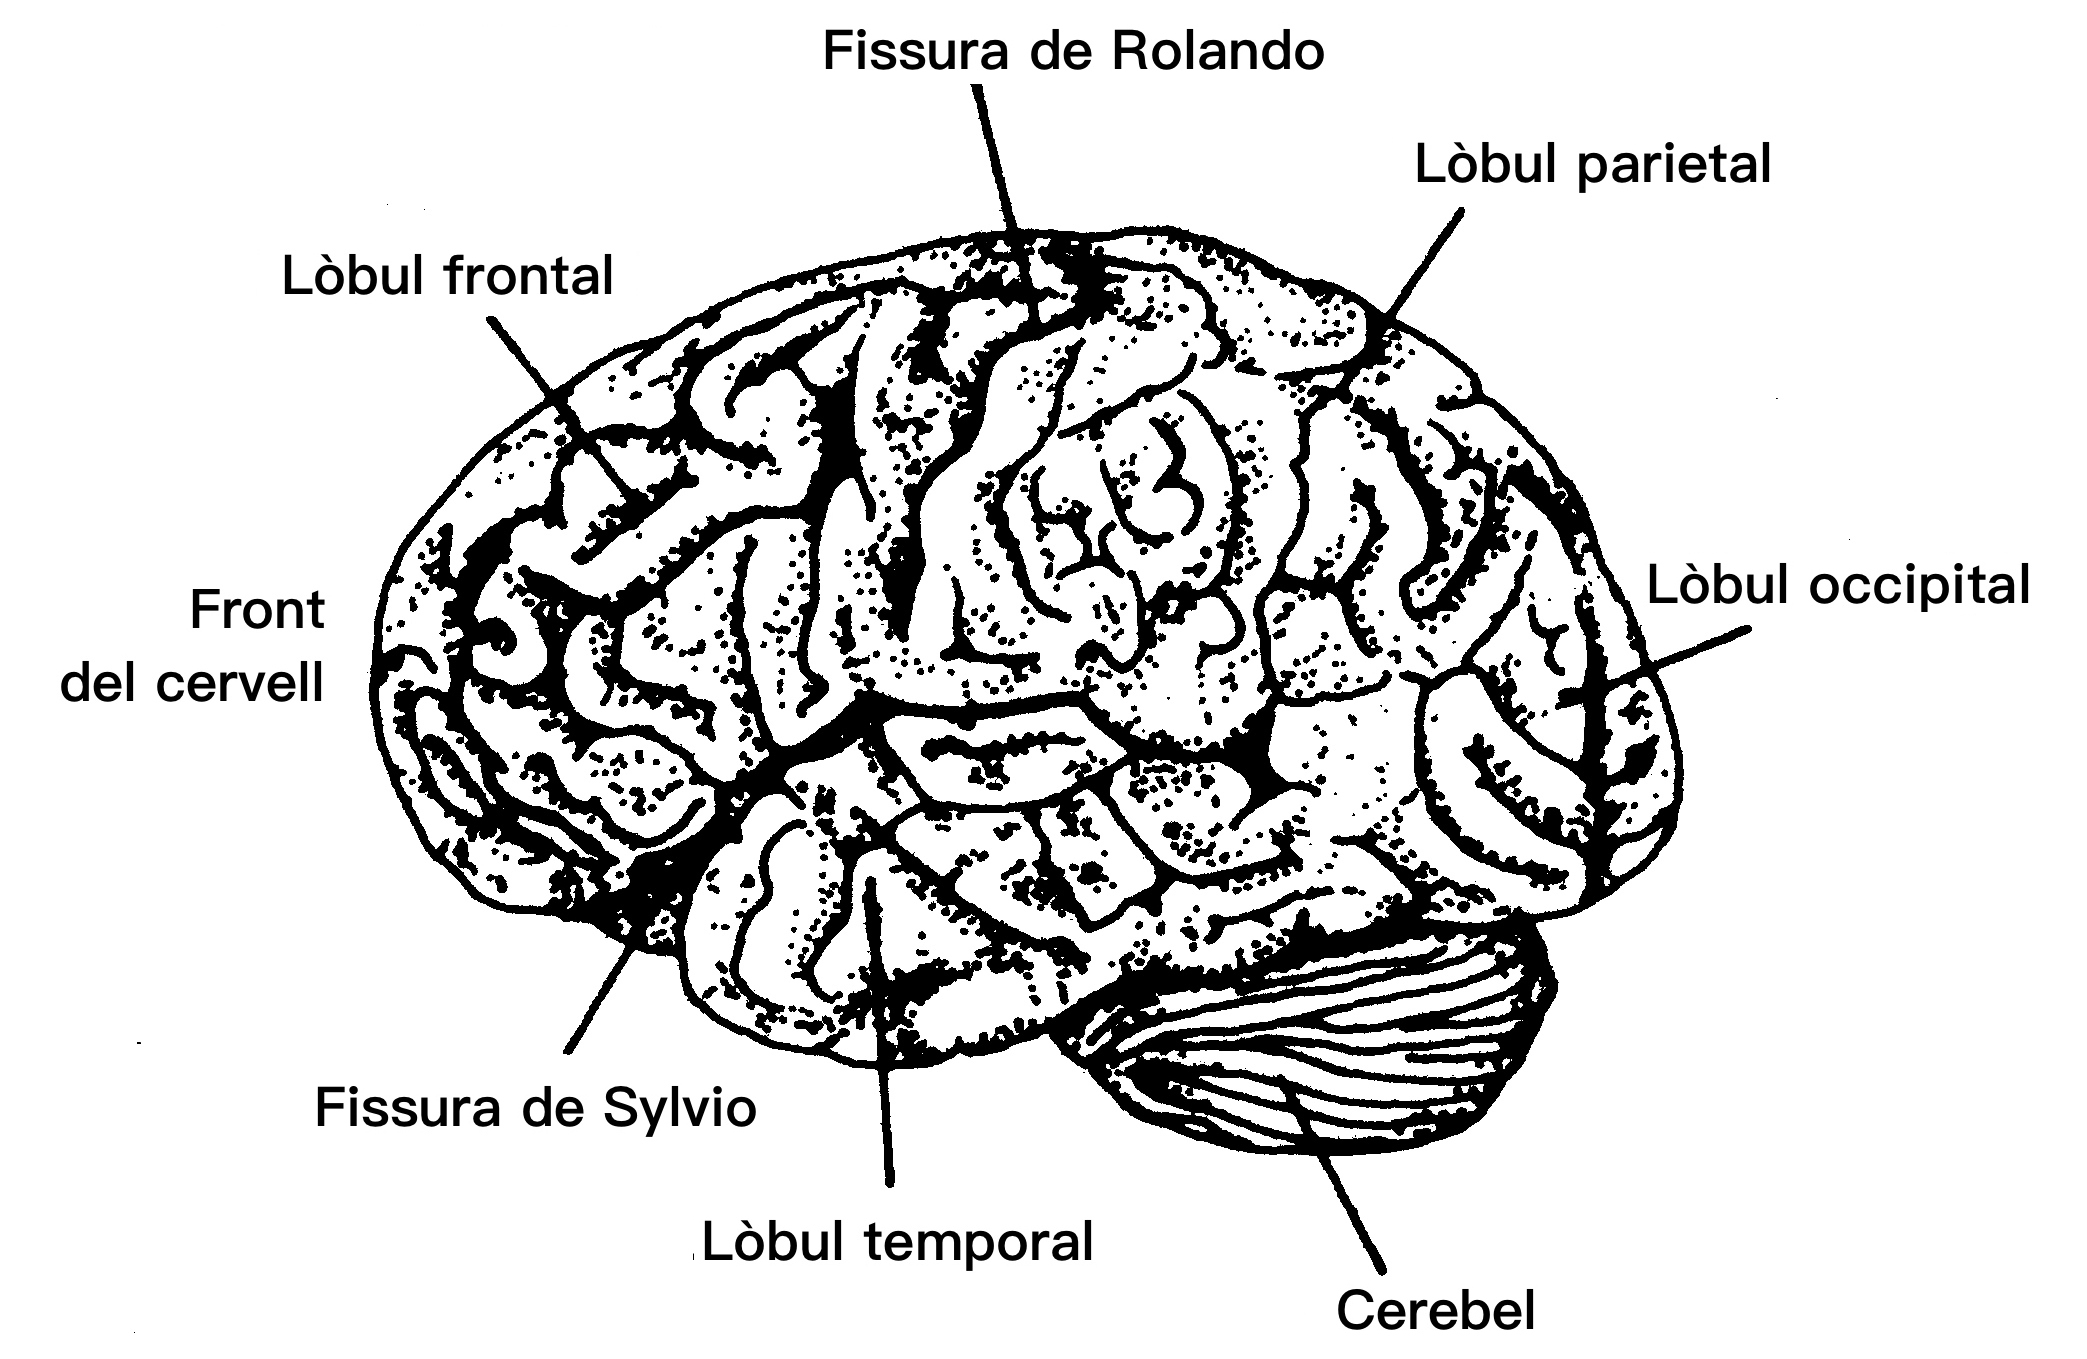 Lbul temporal i resta del cervell